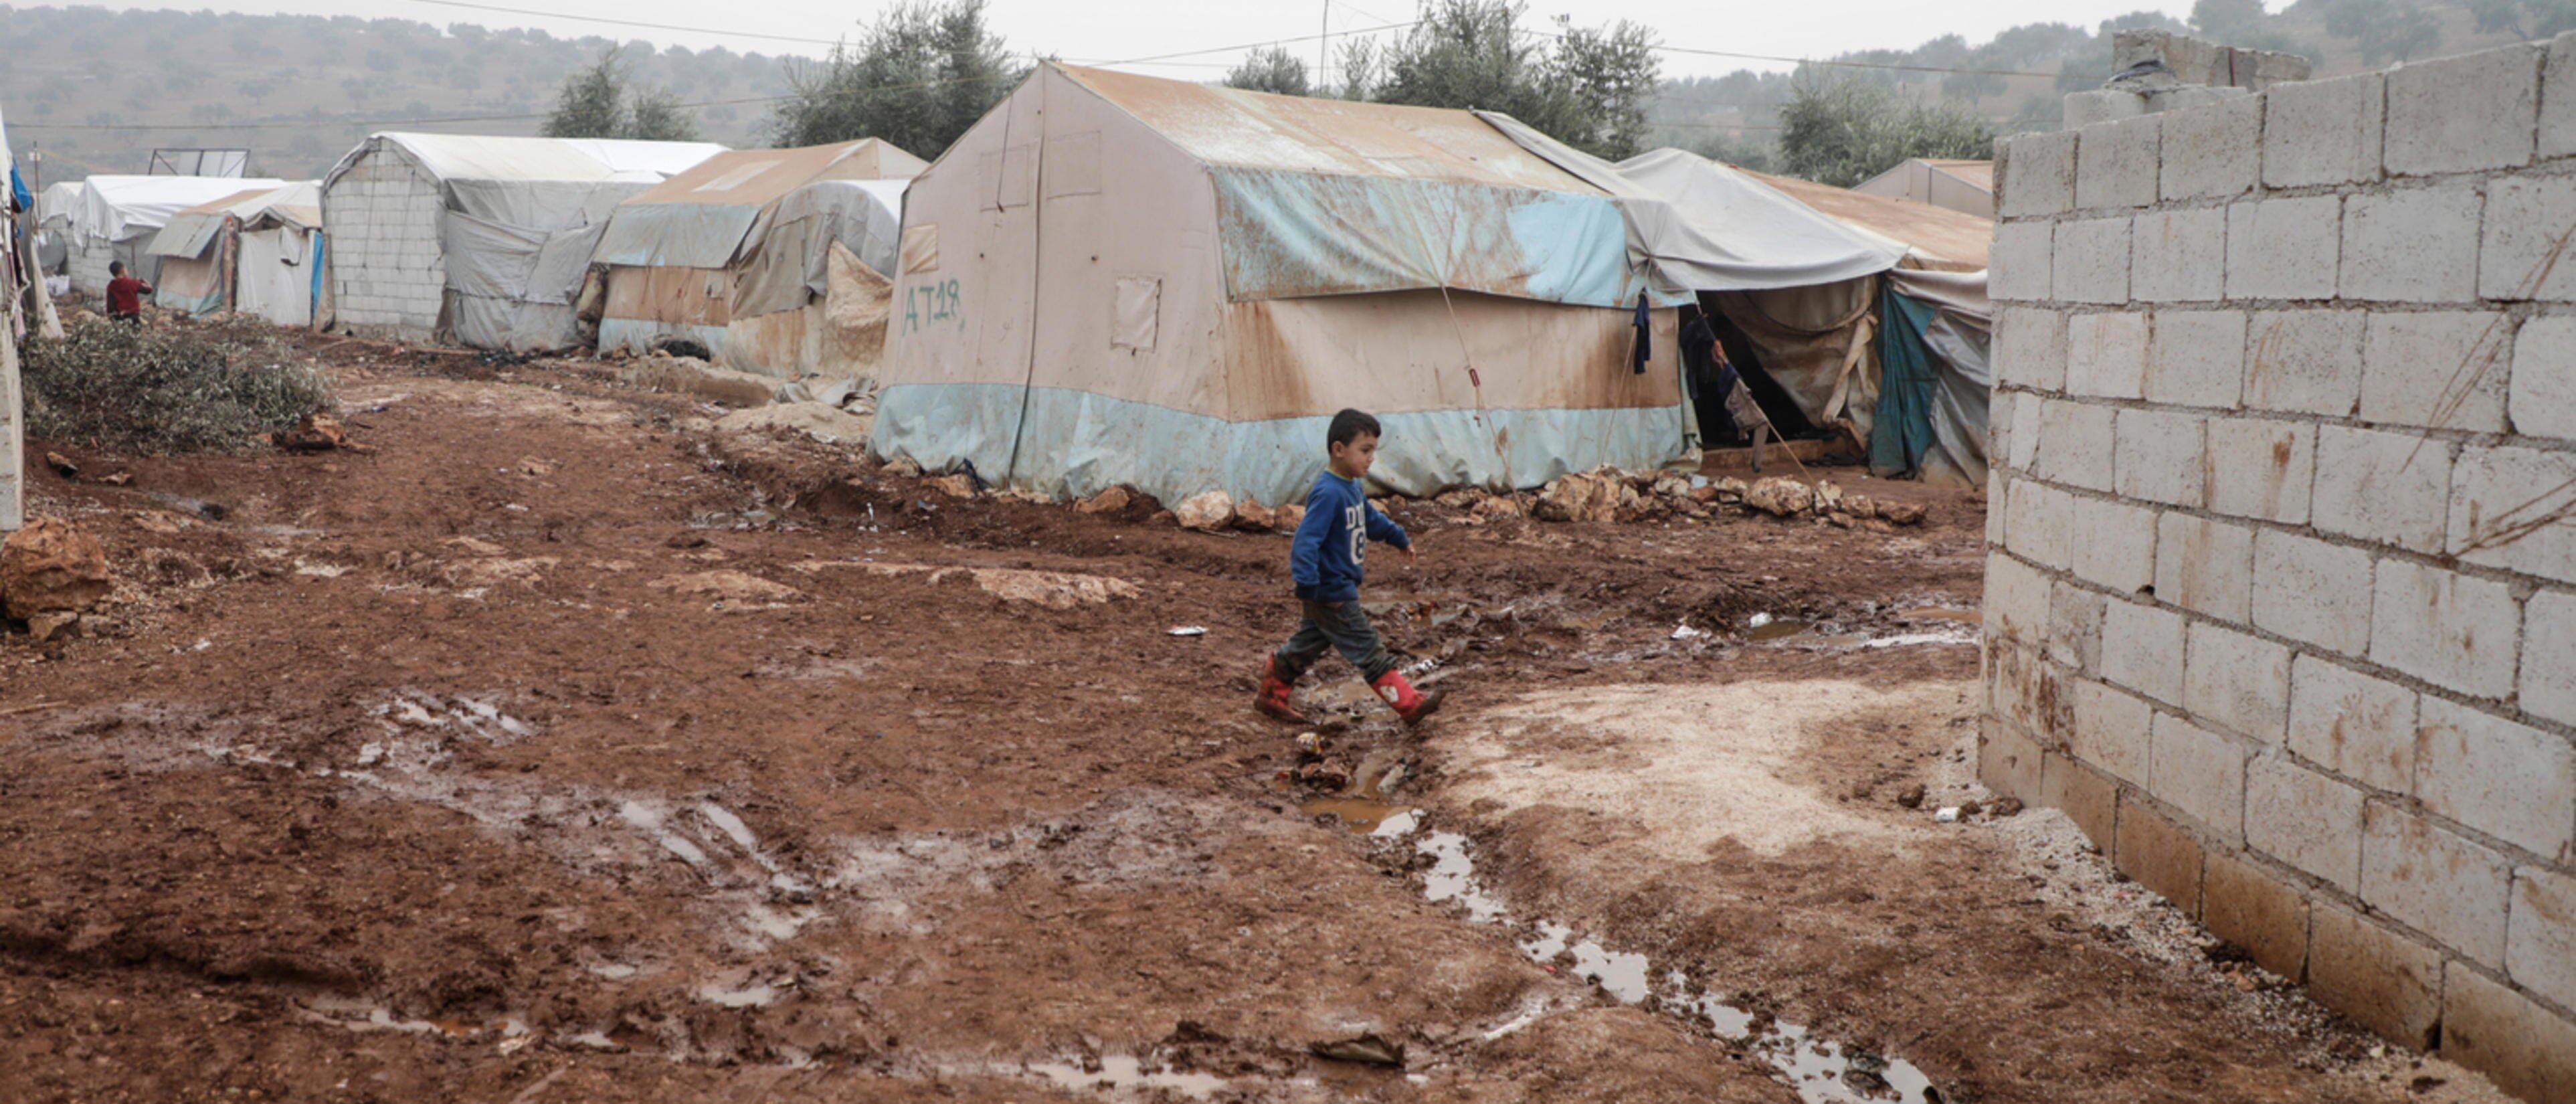 A boy walking through muddy barracks 